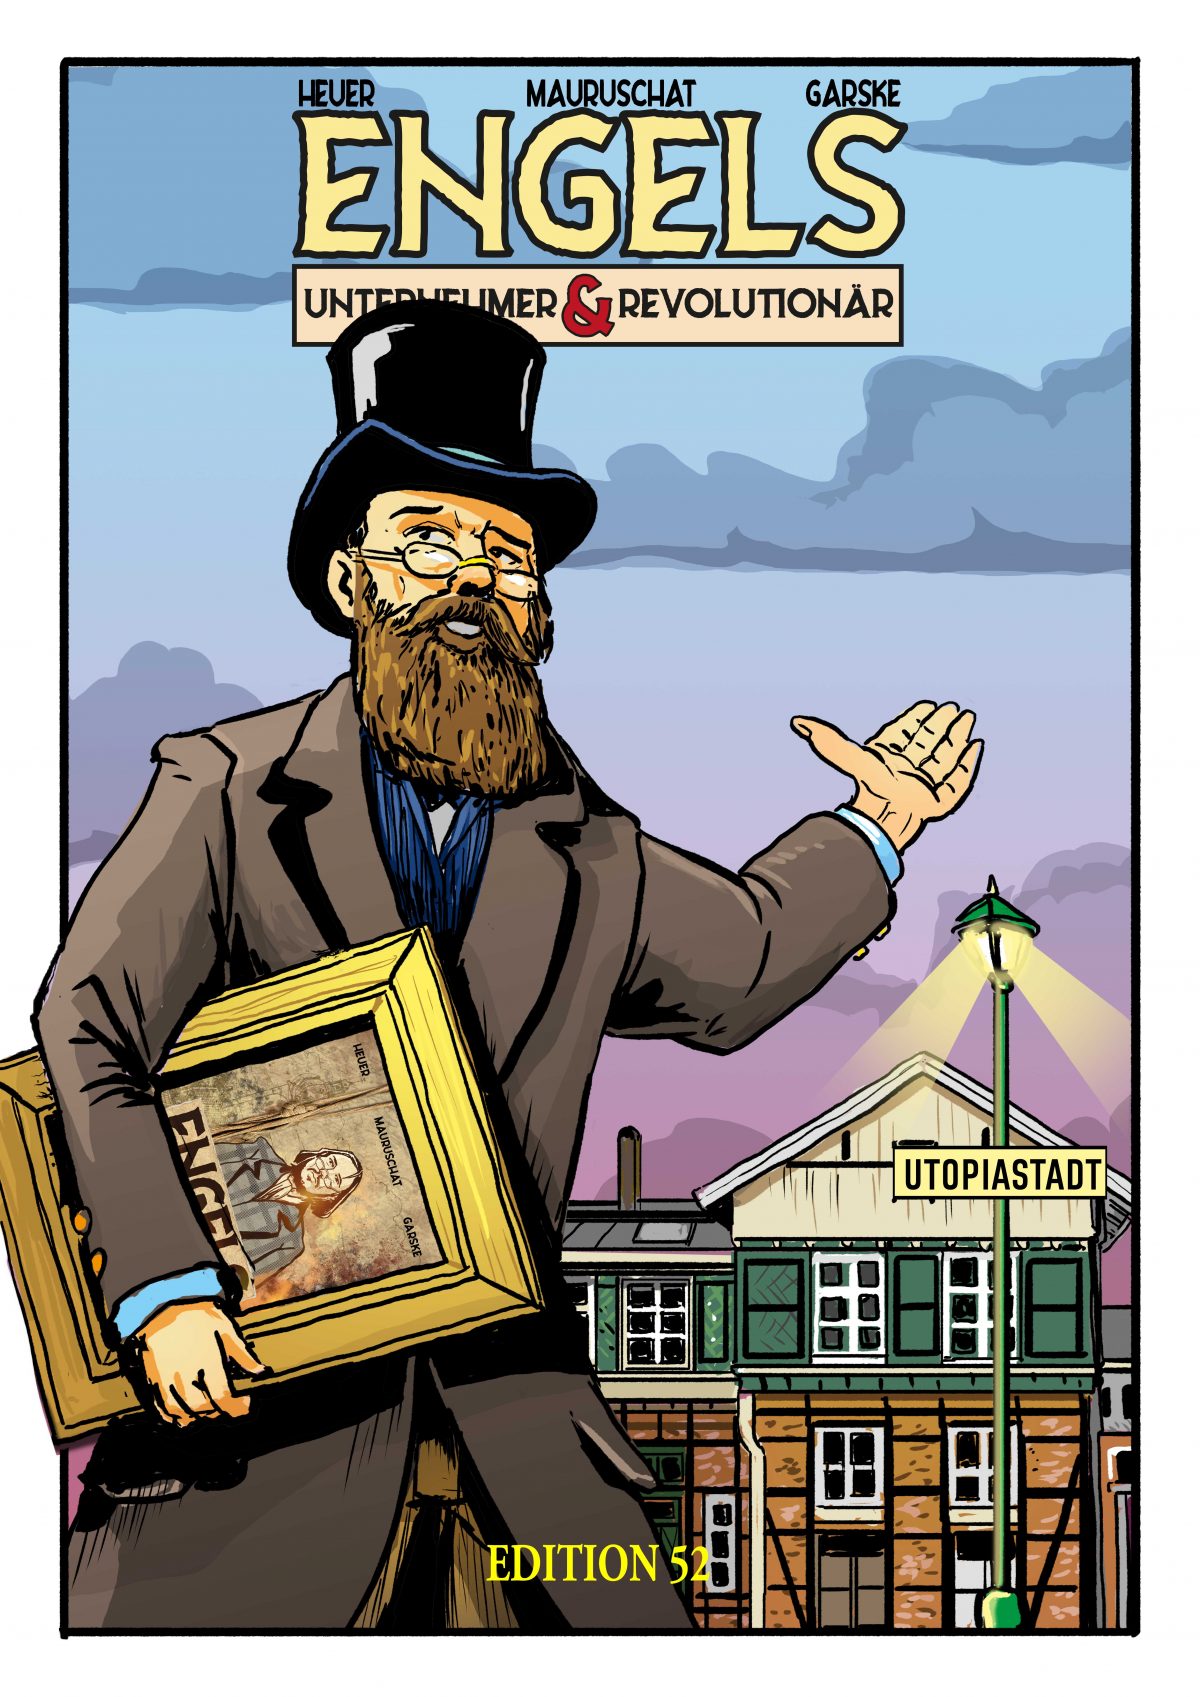 Gezeichnet im Comic-Stil: Friedrich Engels vor dem Mirker Bahnhof, er weist mit einer Hand Richtung Utopiastadt, unter dem anderen Arm hält er einen Bilderrahmen mit dem Cover-Motiv des Engels-Comics.